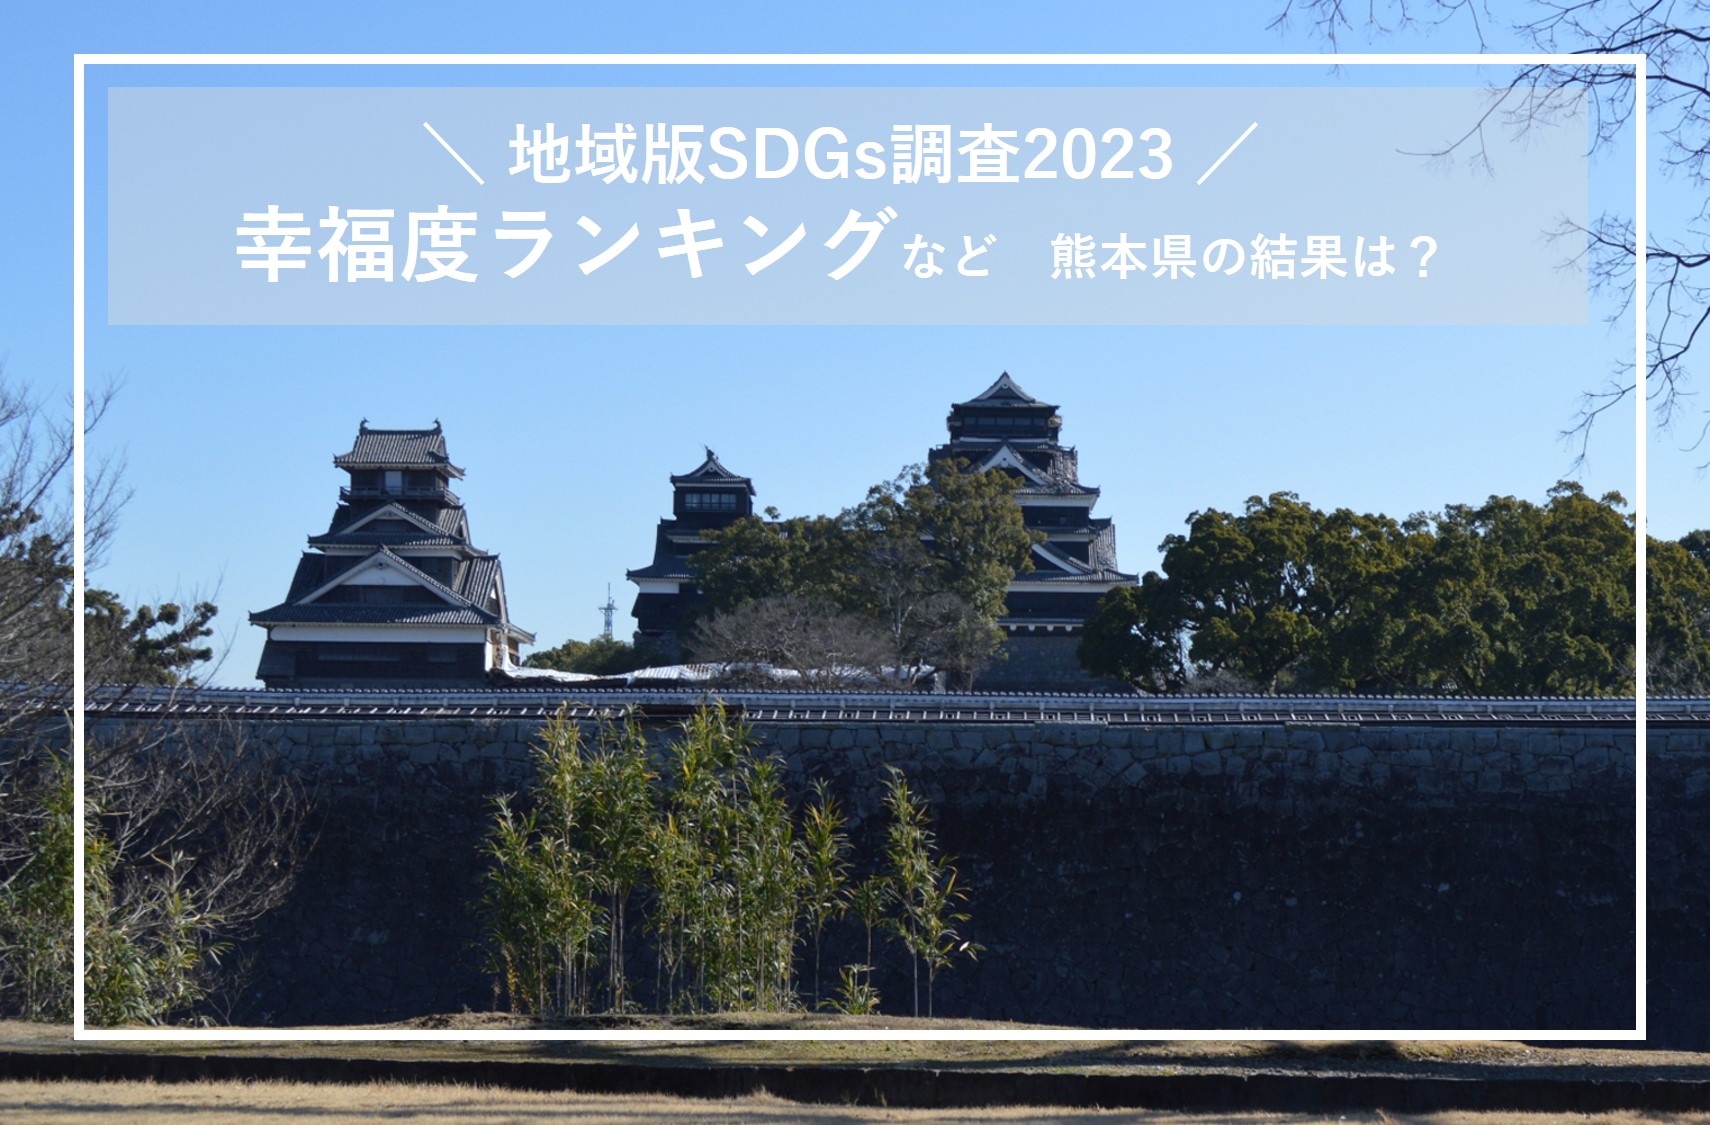 「地域版SDGs調査2023」幸福度ランキングで熊本県は3位と前年より大幅に上昇